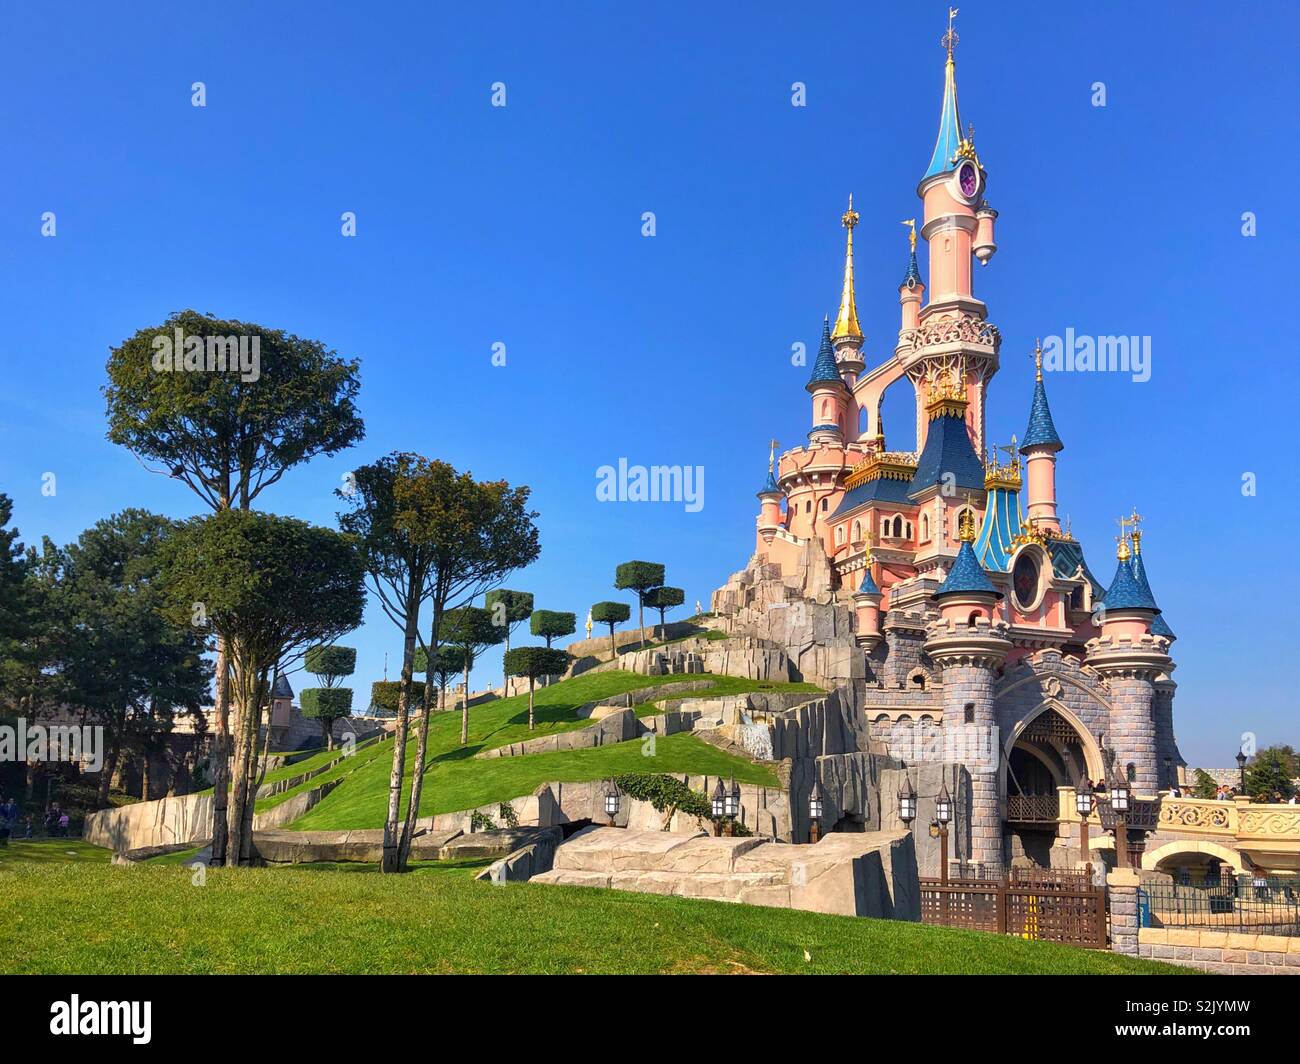 Le château Disney, Disneyland Paris. Banque D'Images